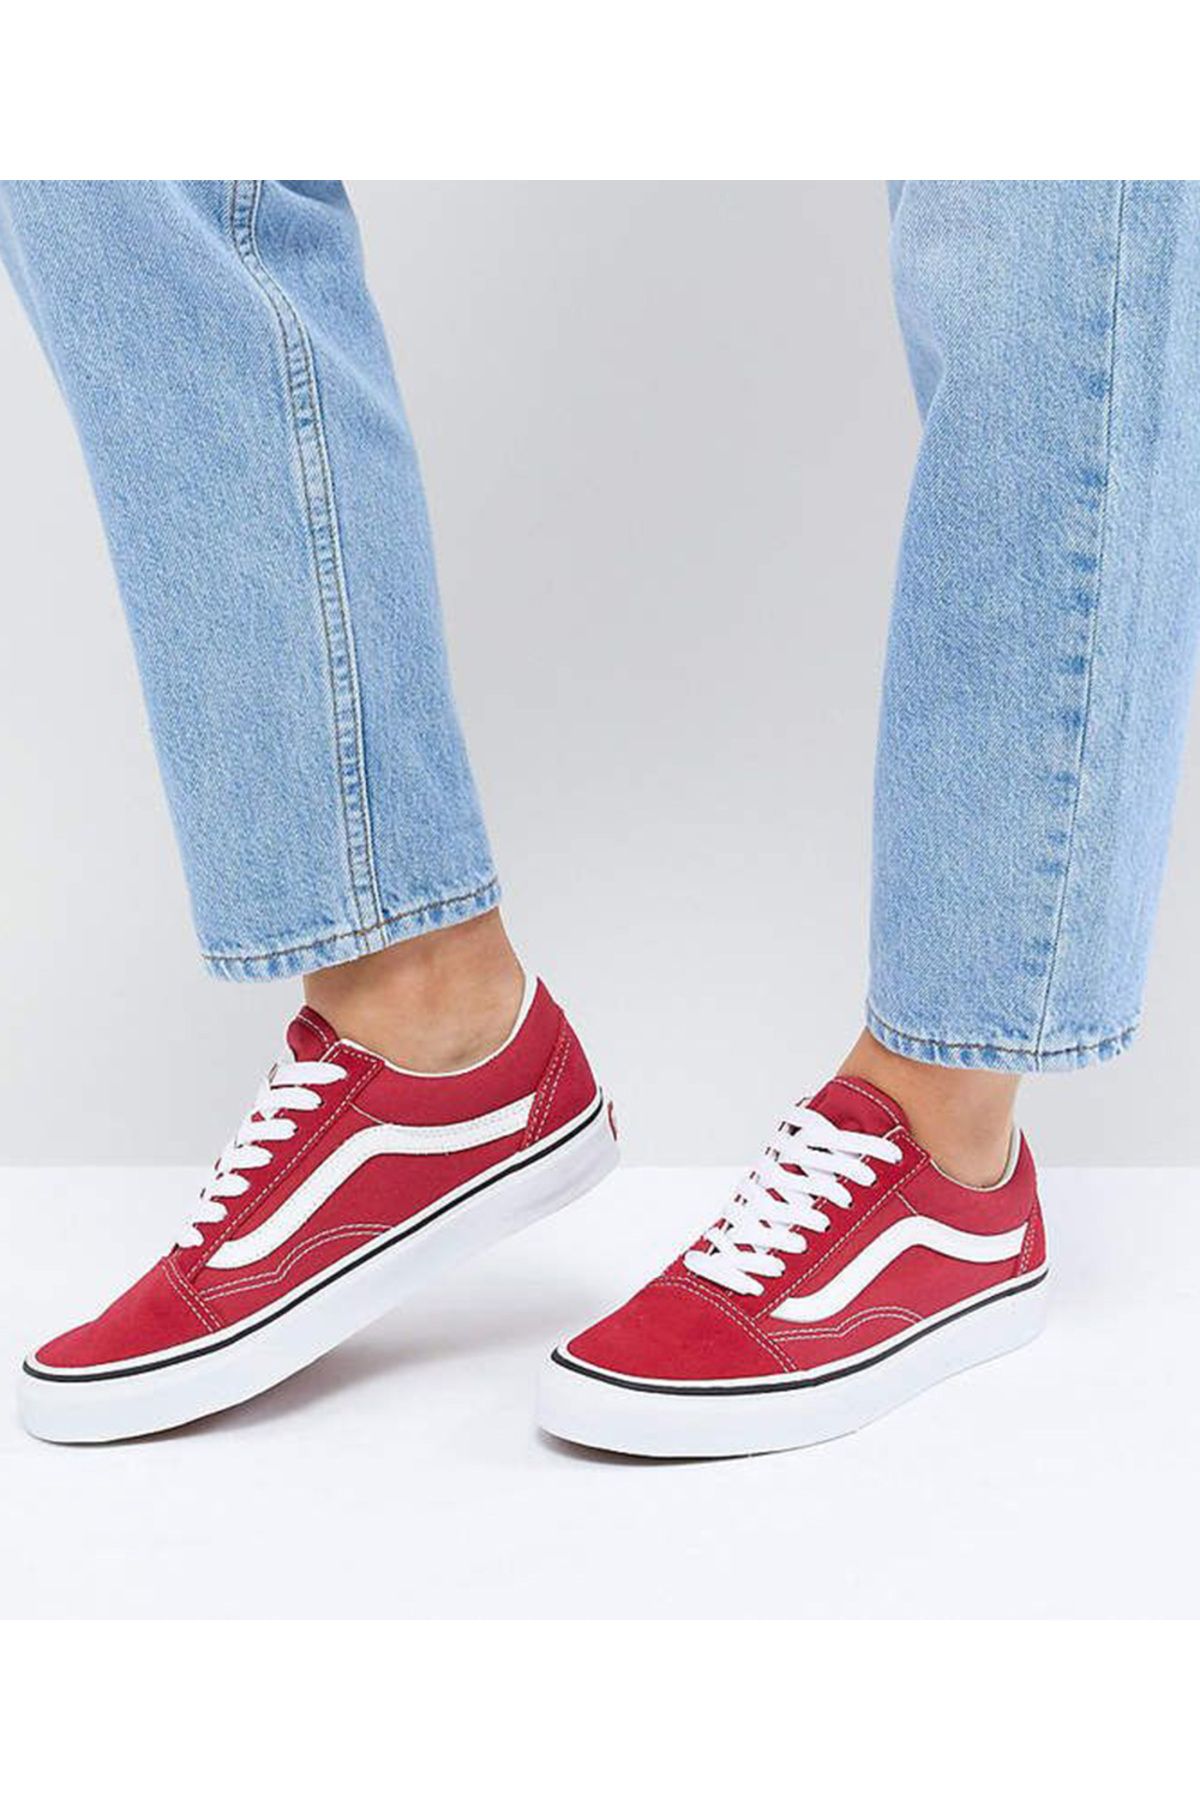 Vans Old Skool Günlük Ayakkabı Sneaker Kırmızı